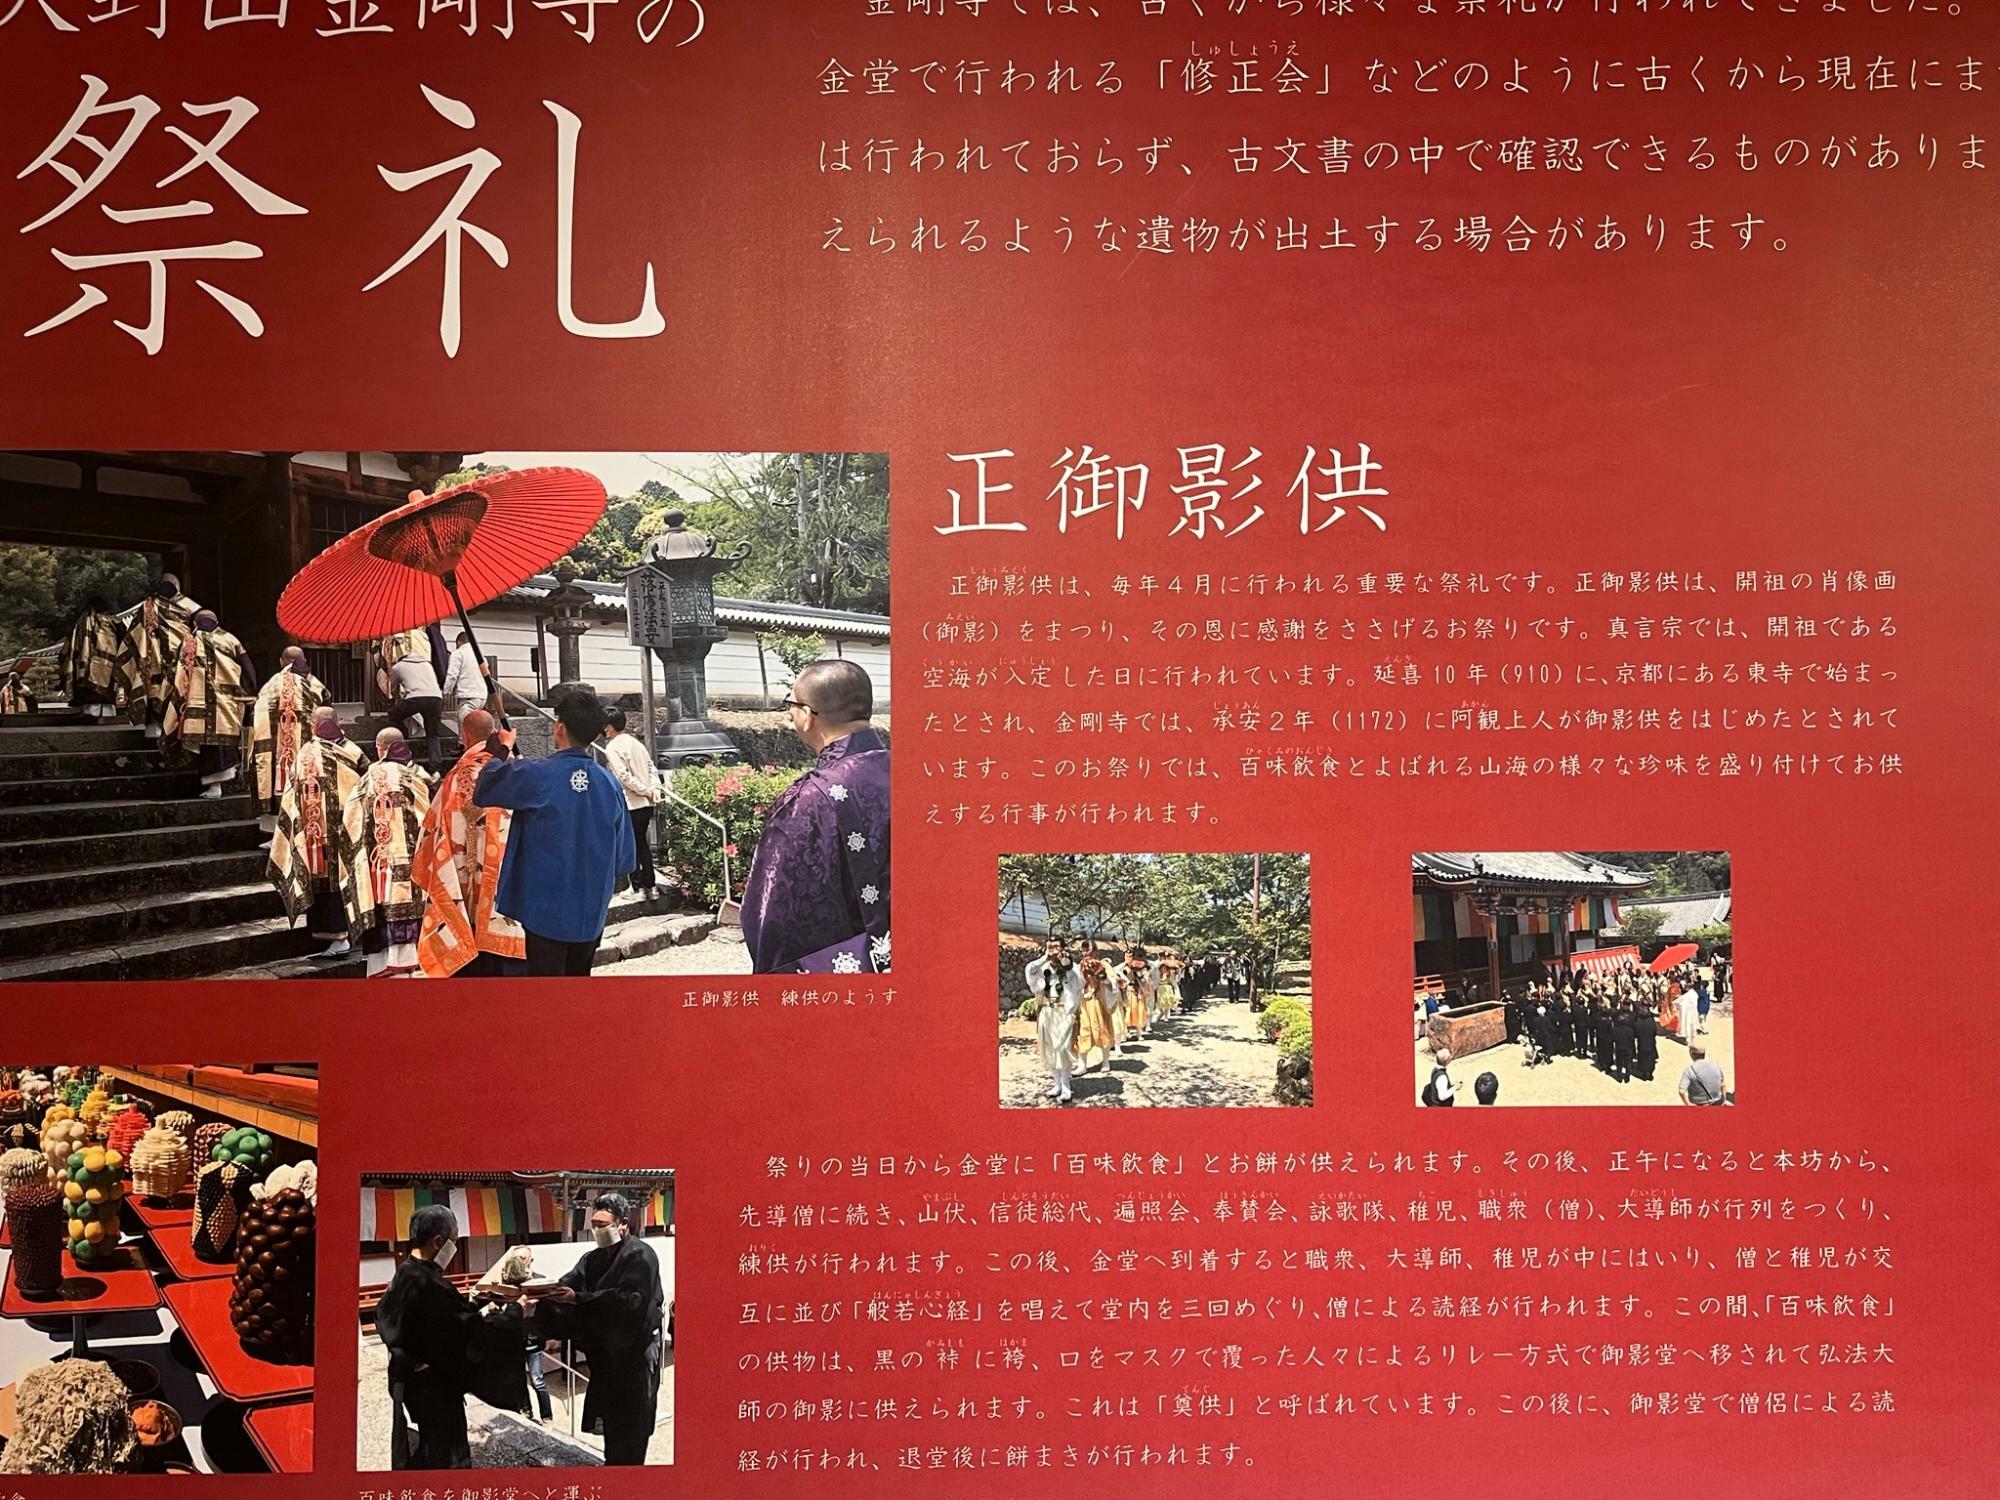 昨年ふるさと歴史学習館で行われていた天野山金剛寺の展示